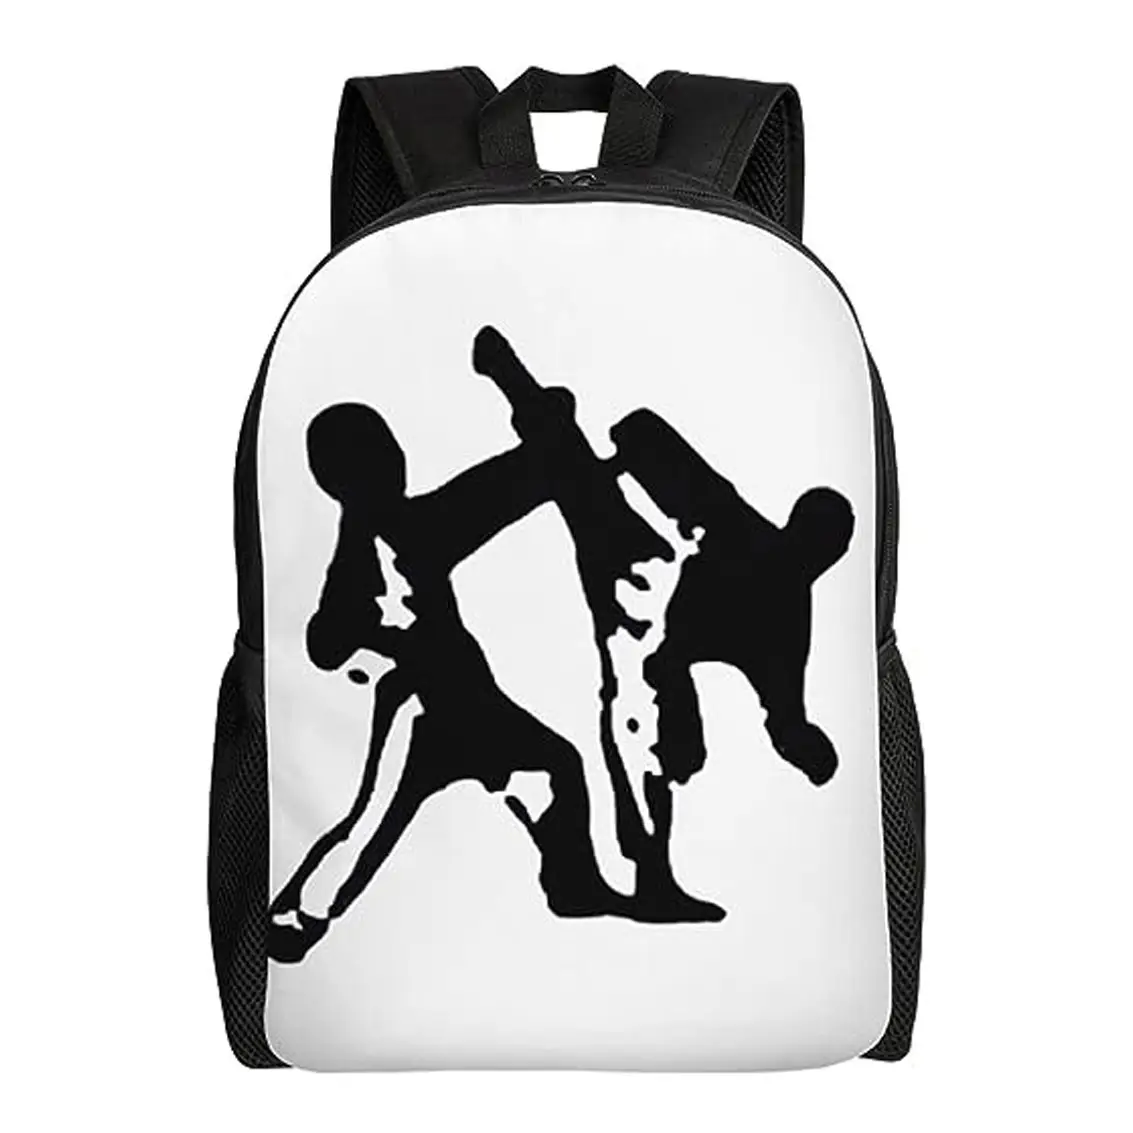 Mochila casual leve para viagem, mochila para laptop, mochila para mulheres e homens, mochila estampada de artes marciais de taekwondo, durável